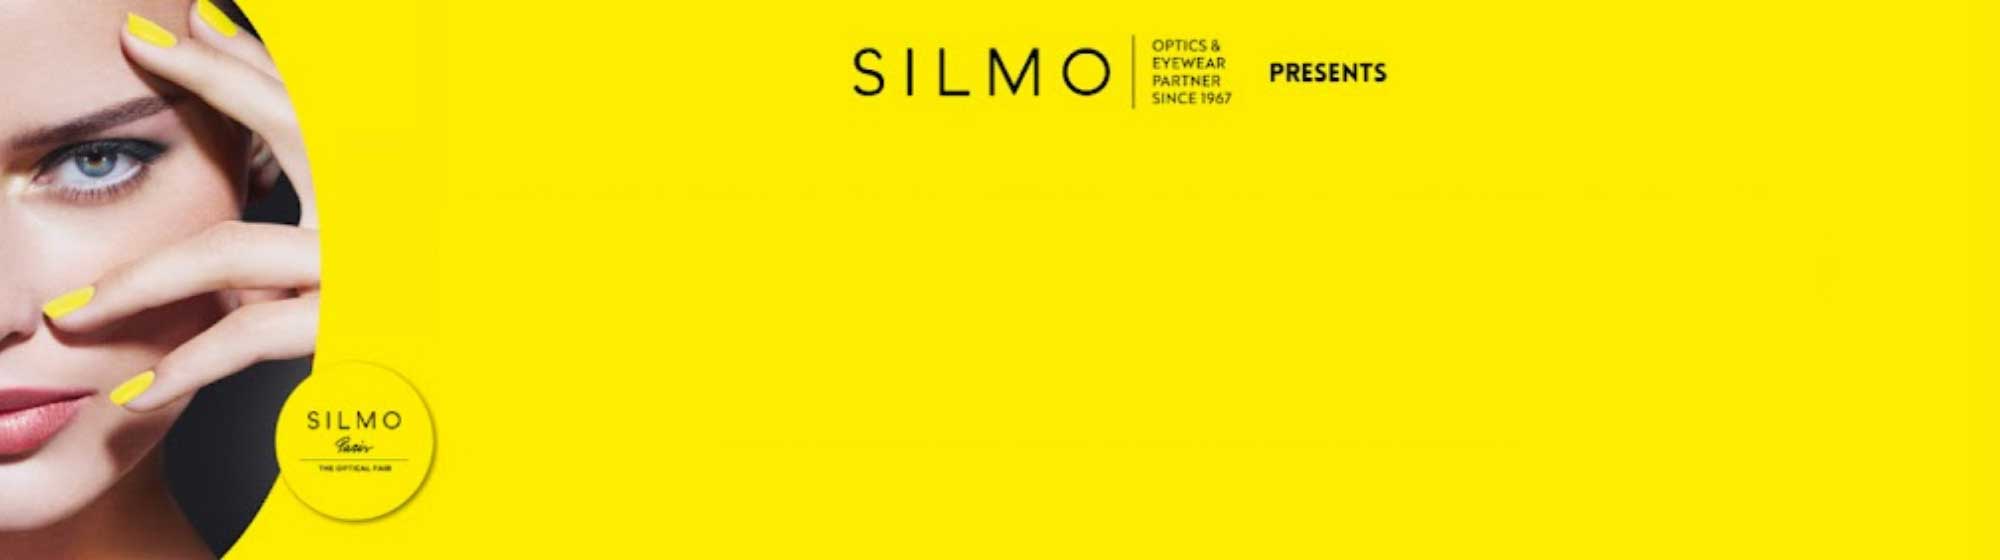 Bannière avec logo SILMO